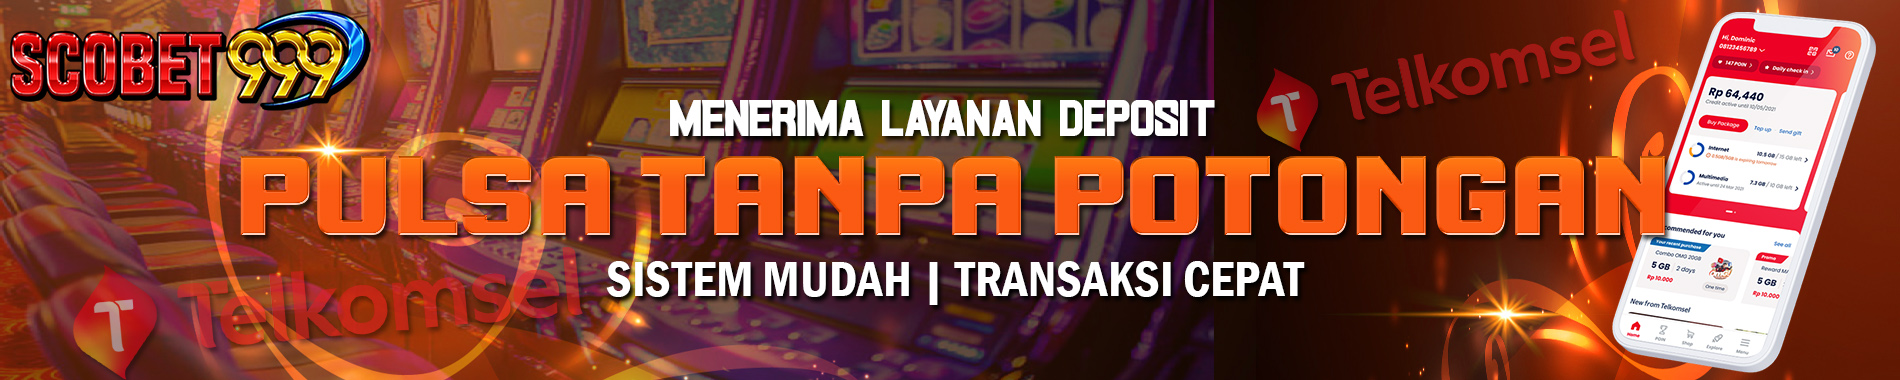 Deposit Pulsa Telkomsel Tanpa Potongan Scobet999